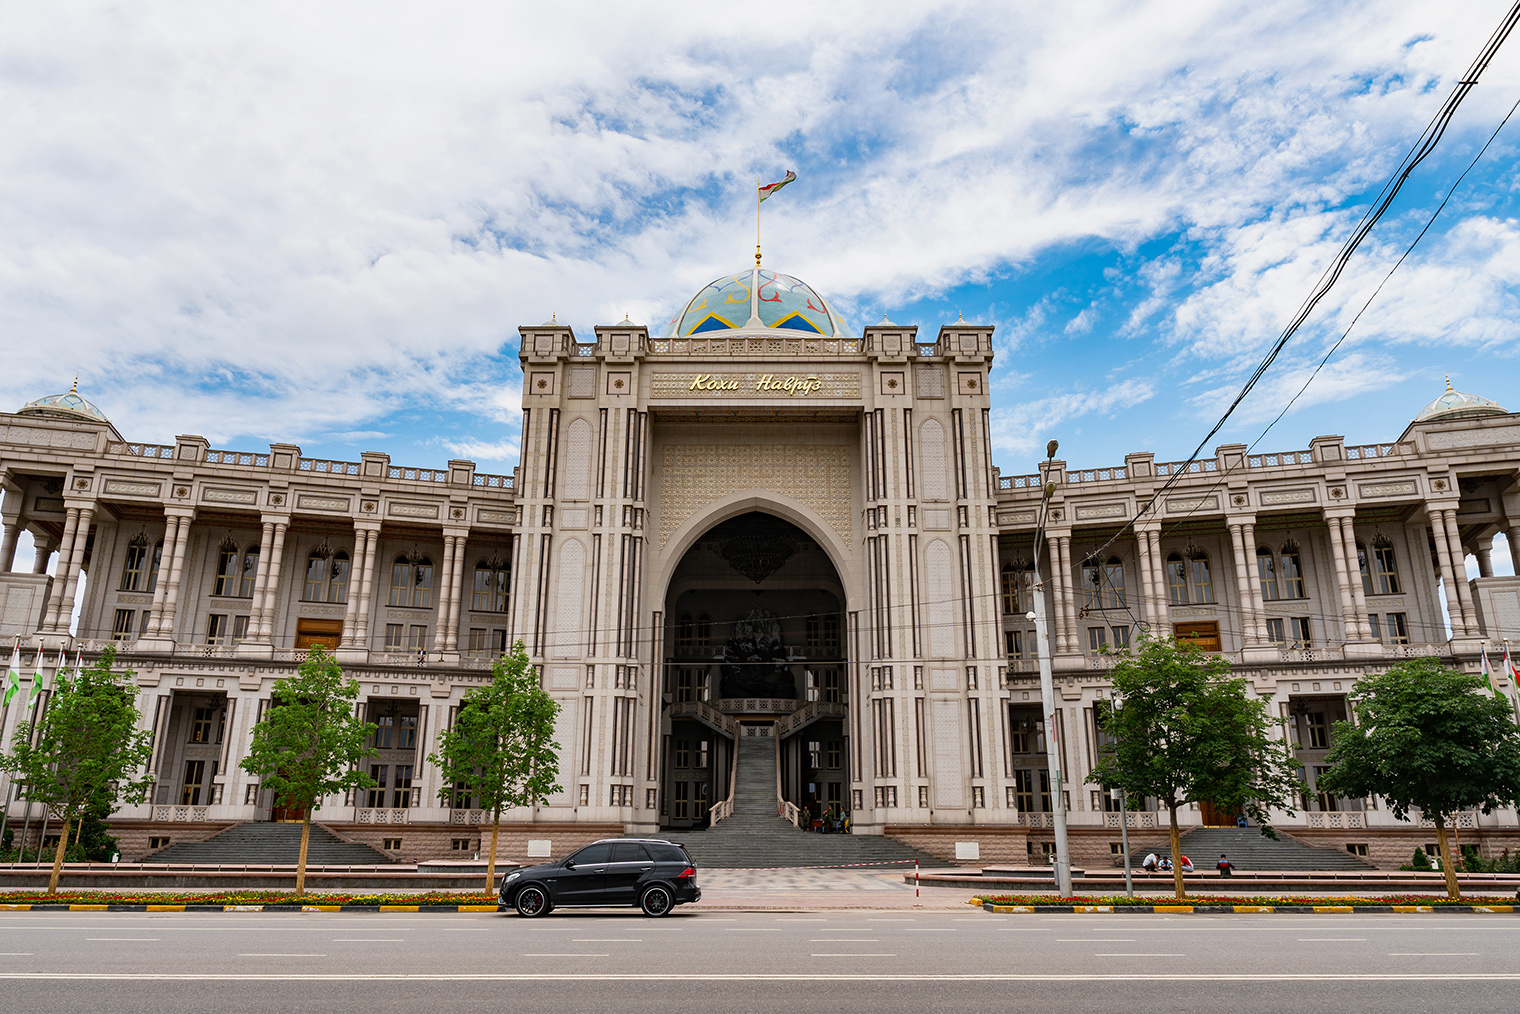 Кинотеатр расположился внутри дворца «Кохи Навруз» — современной архитектурной гордости Таджикистана. Фото: AlexelA / Shutterstock